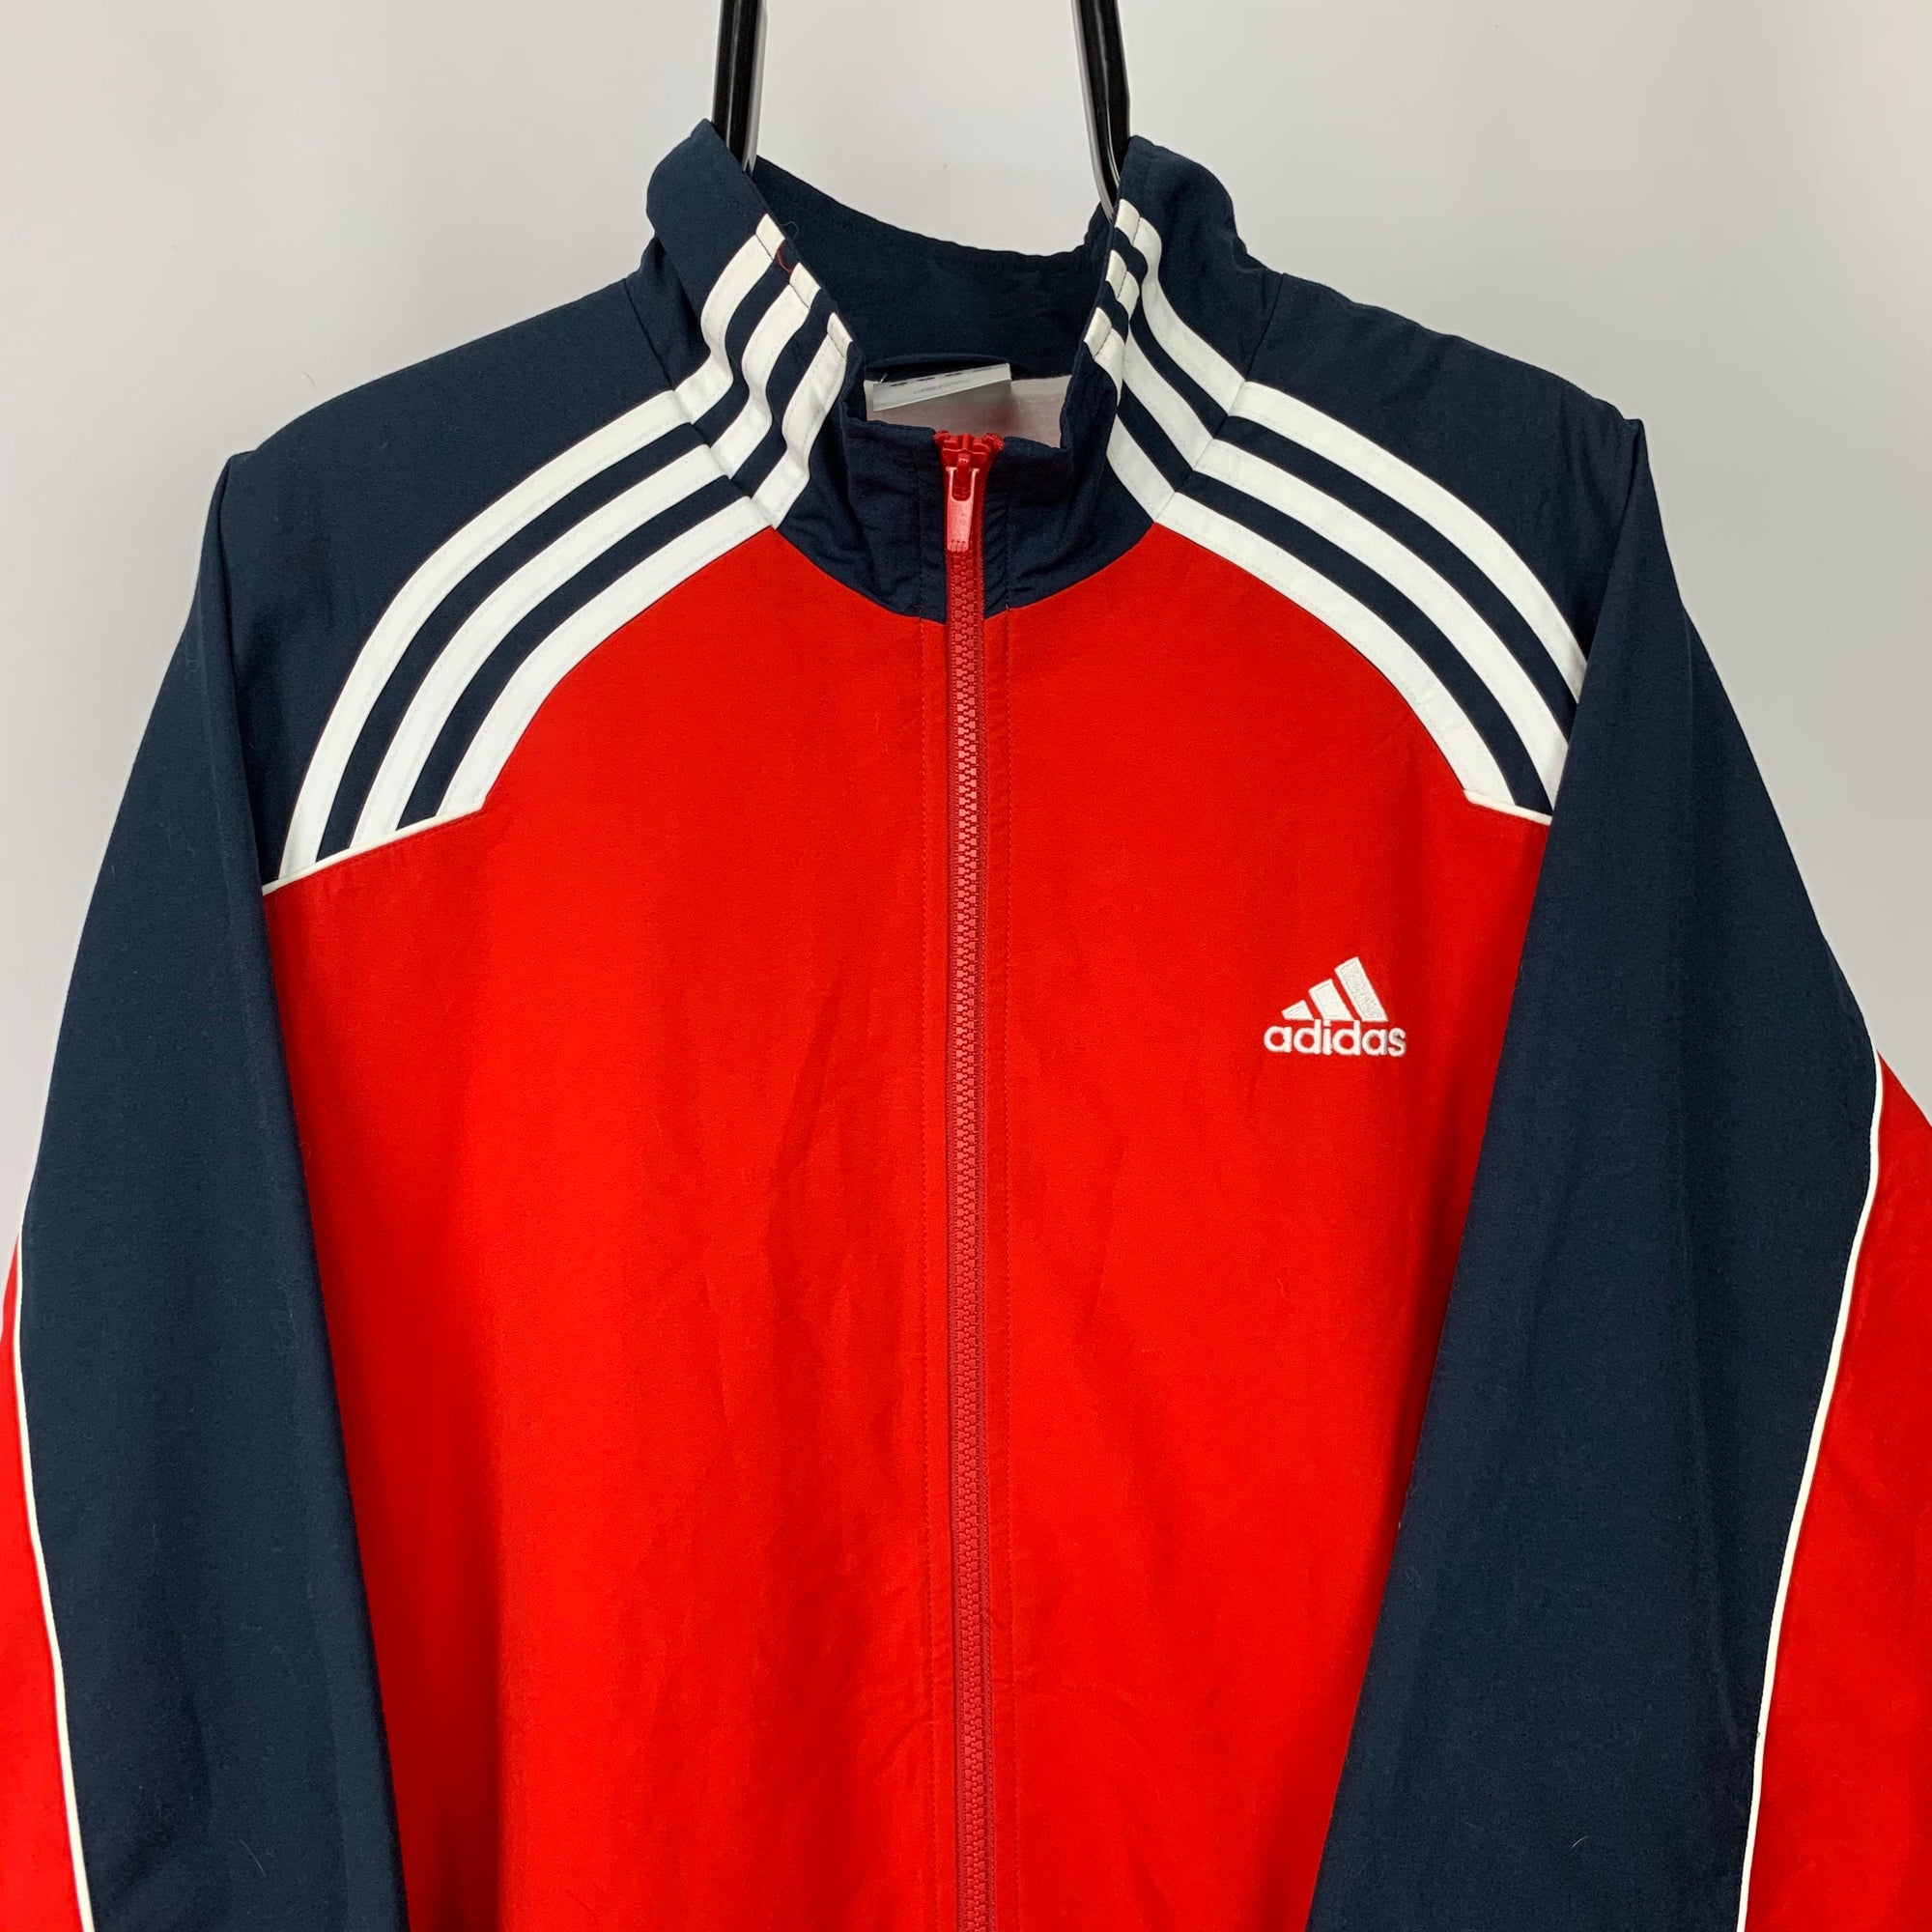 Vintage Adidas Track Jacket in Red/Navy - Men's XL/Women's XXL